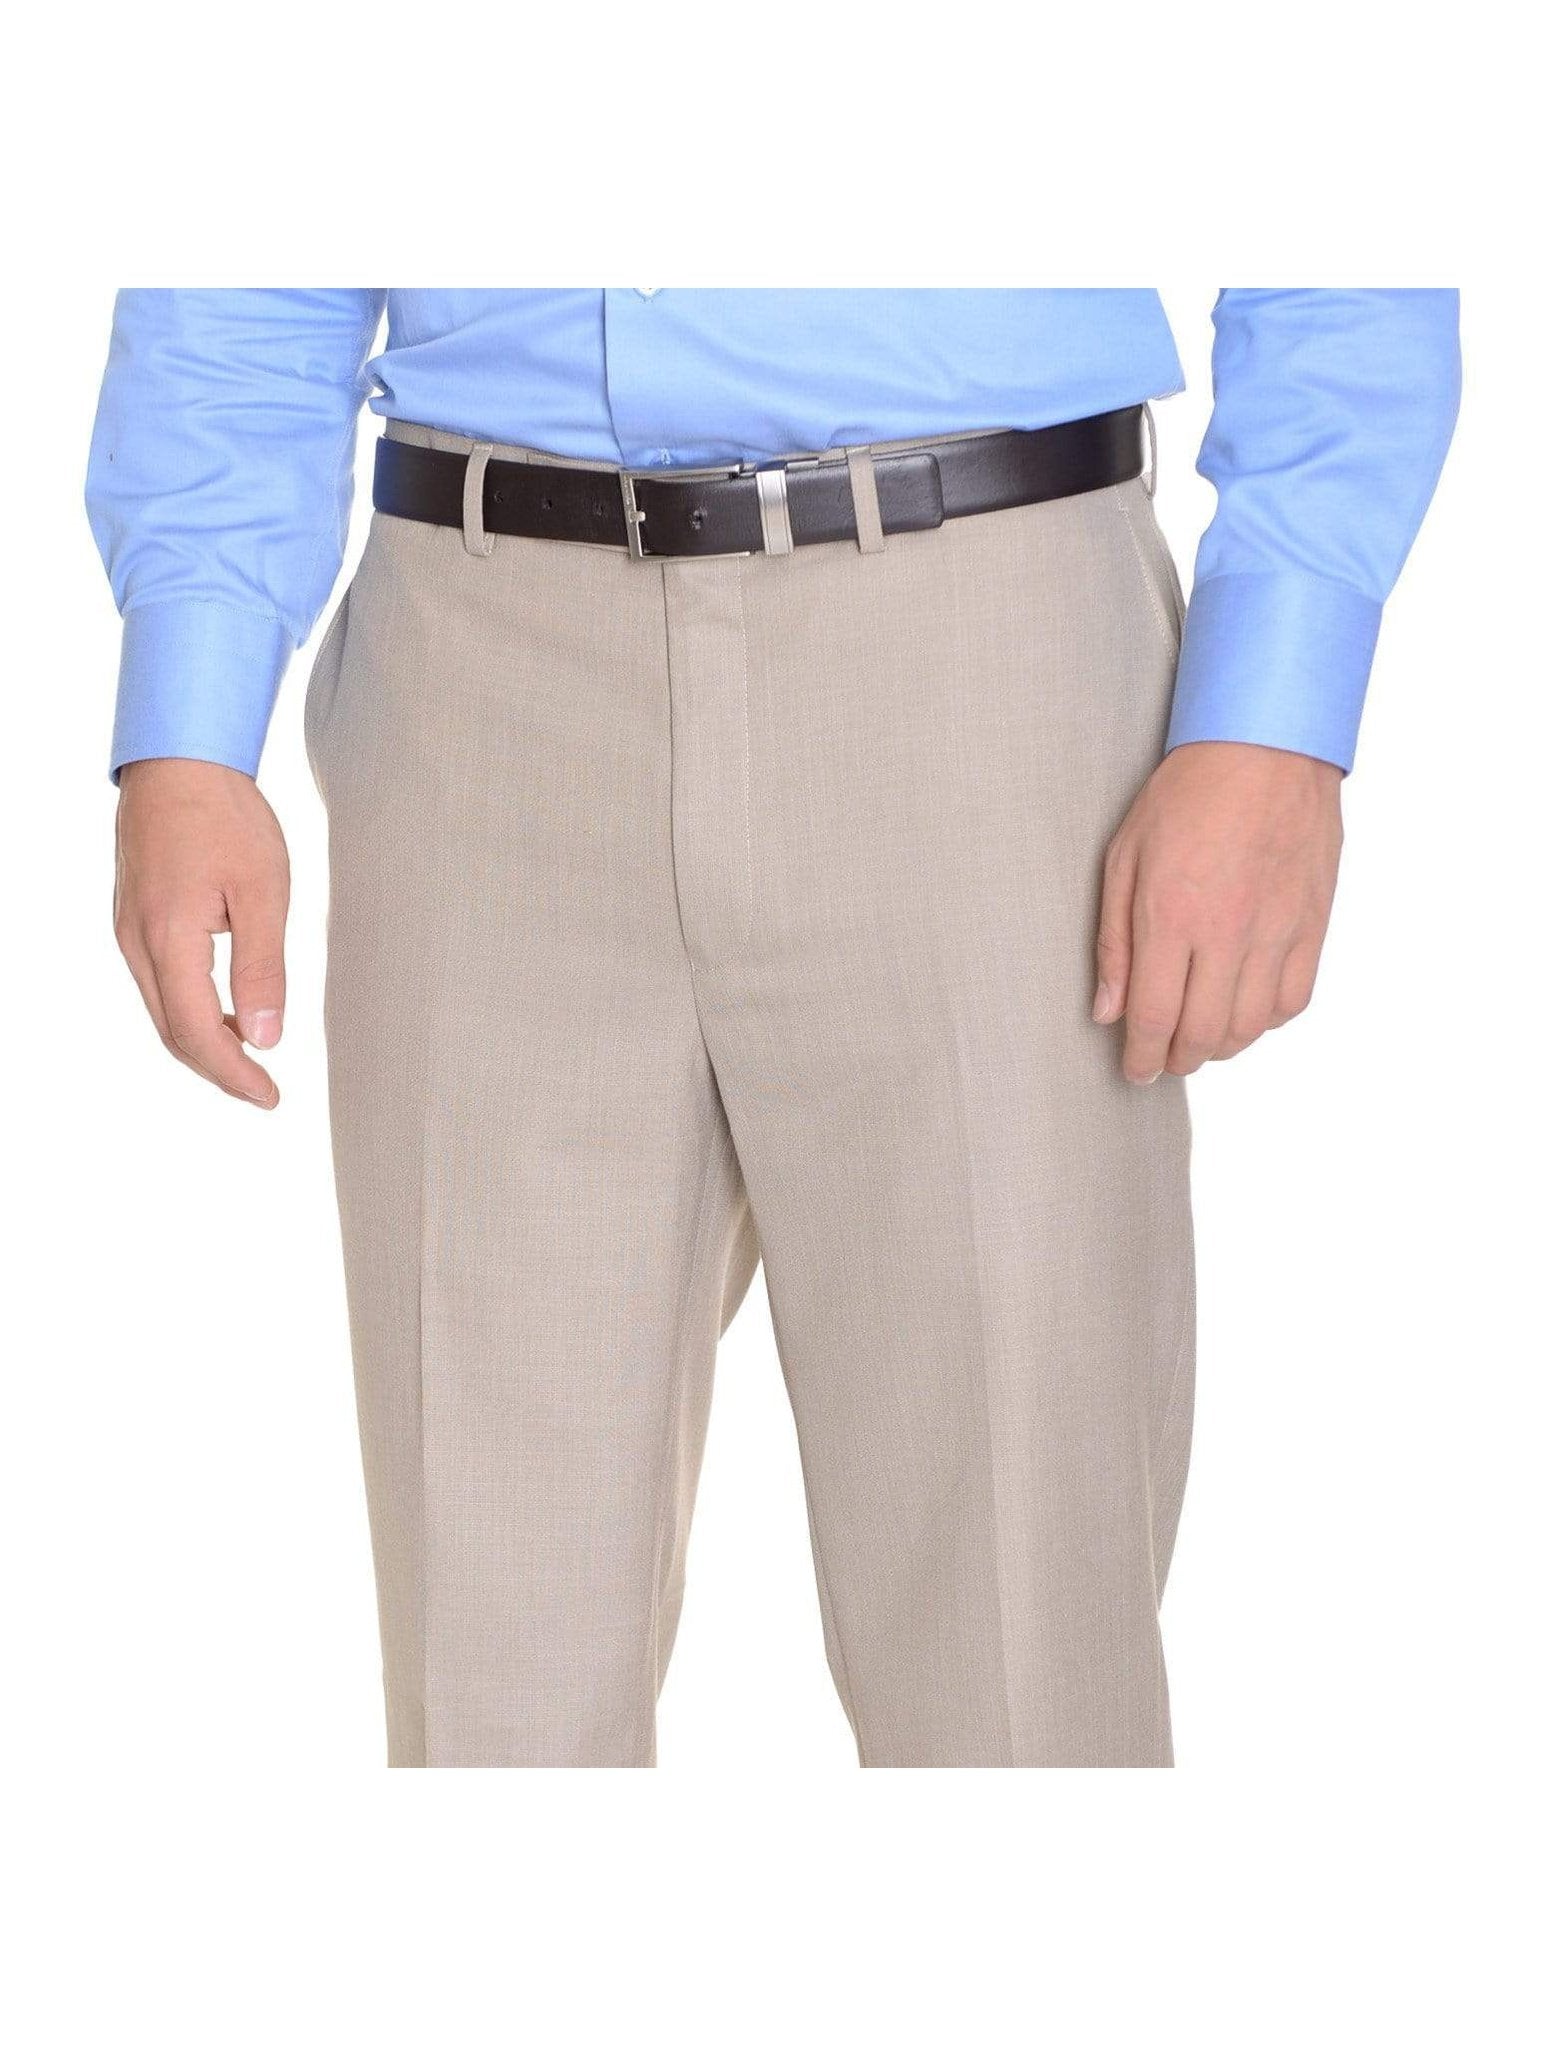 Louis Raphael Mens Blue Slim Fit Flat Front Dress Pants Size 38x30